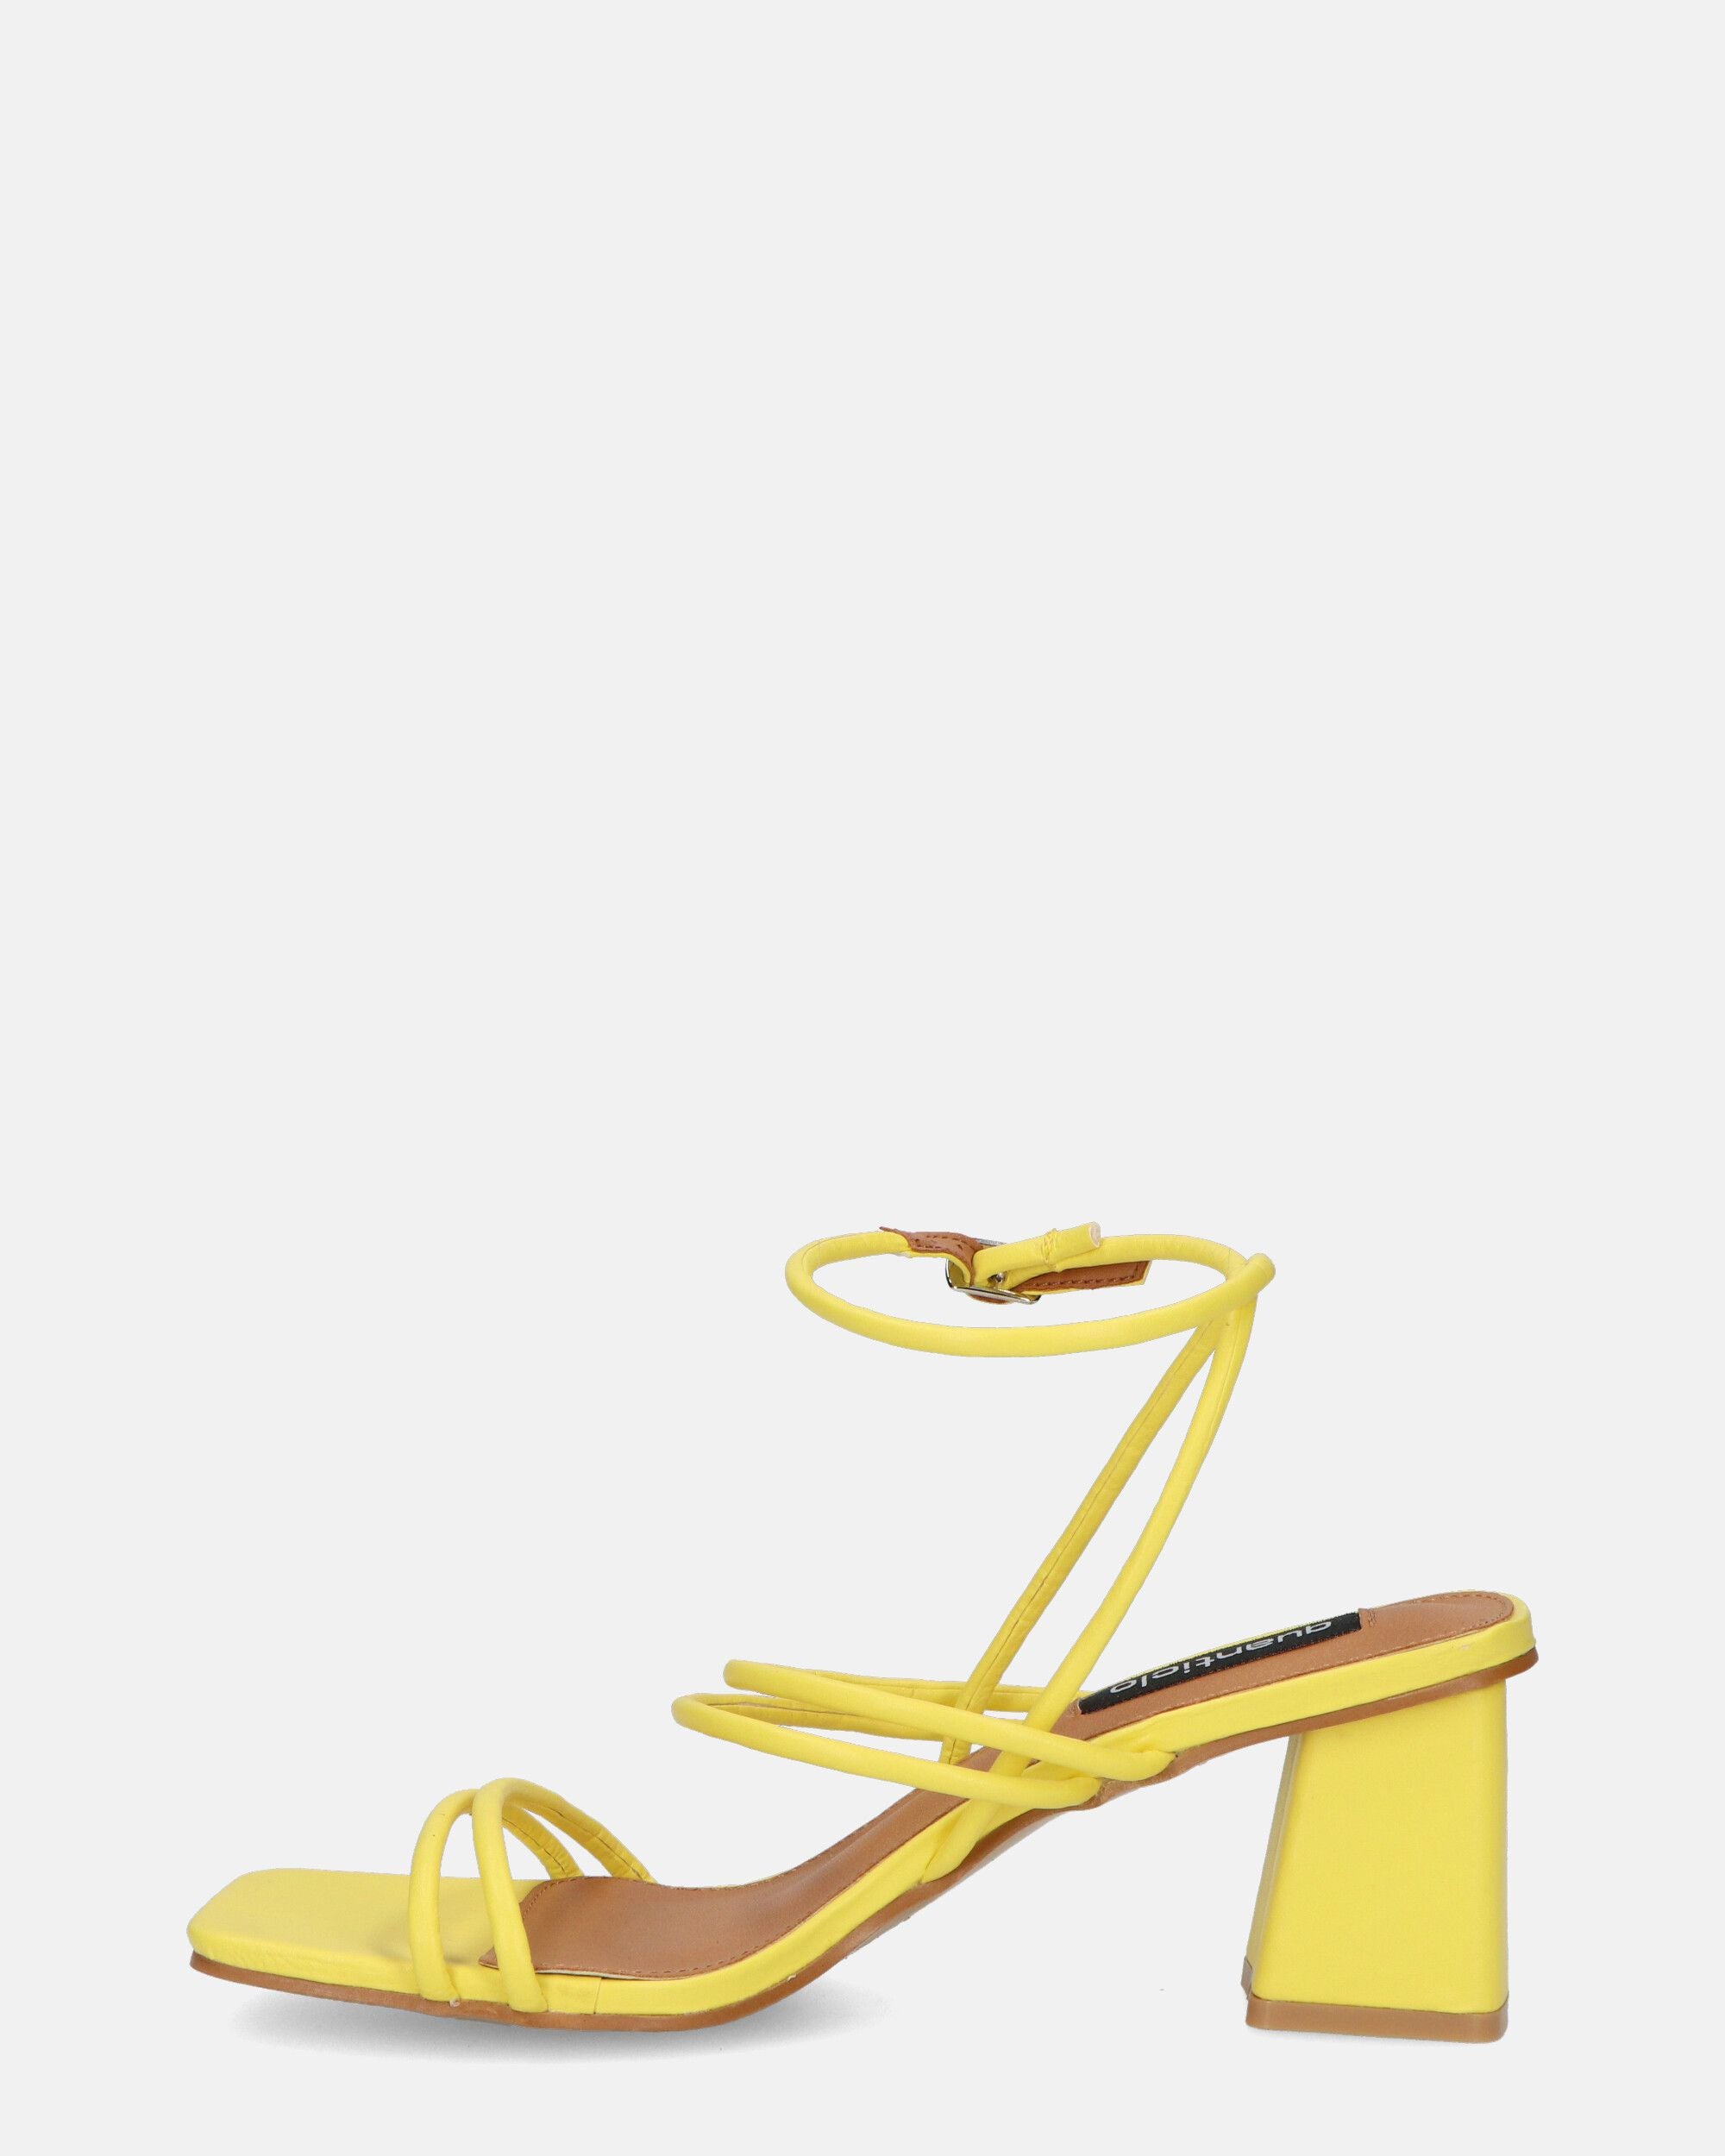 TIARA - sandali in ecopelle gialla con lacci